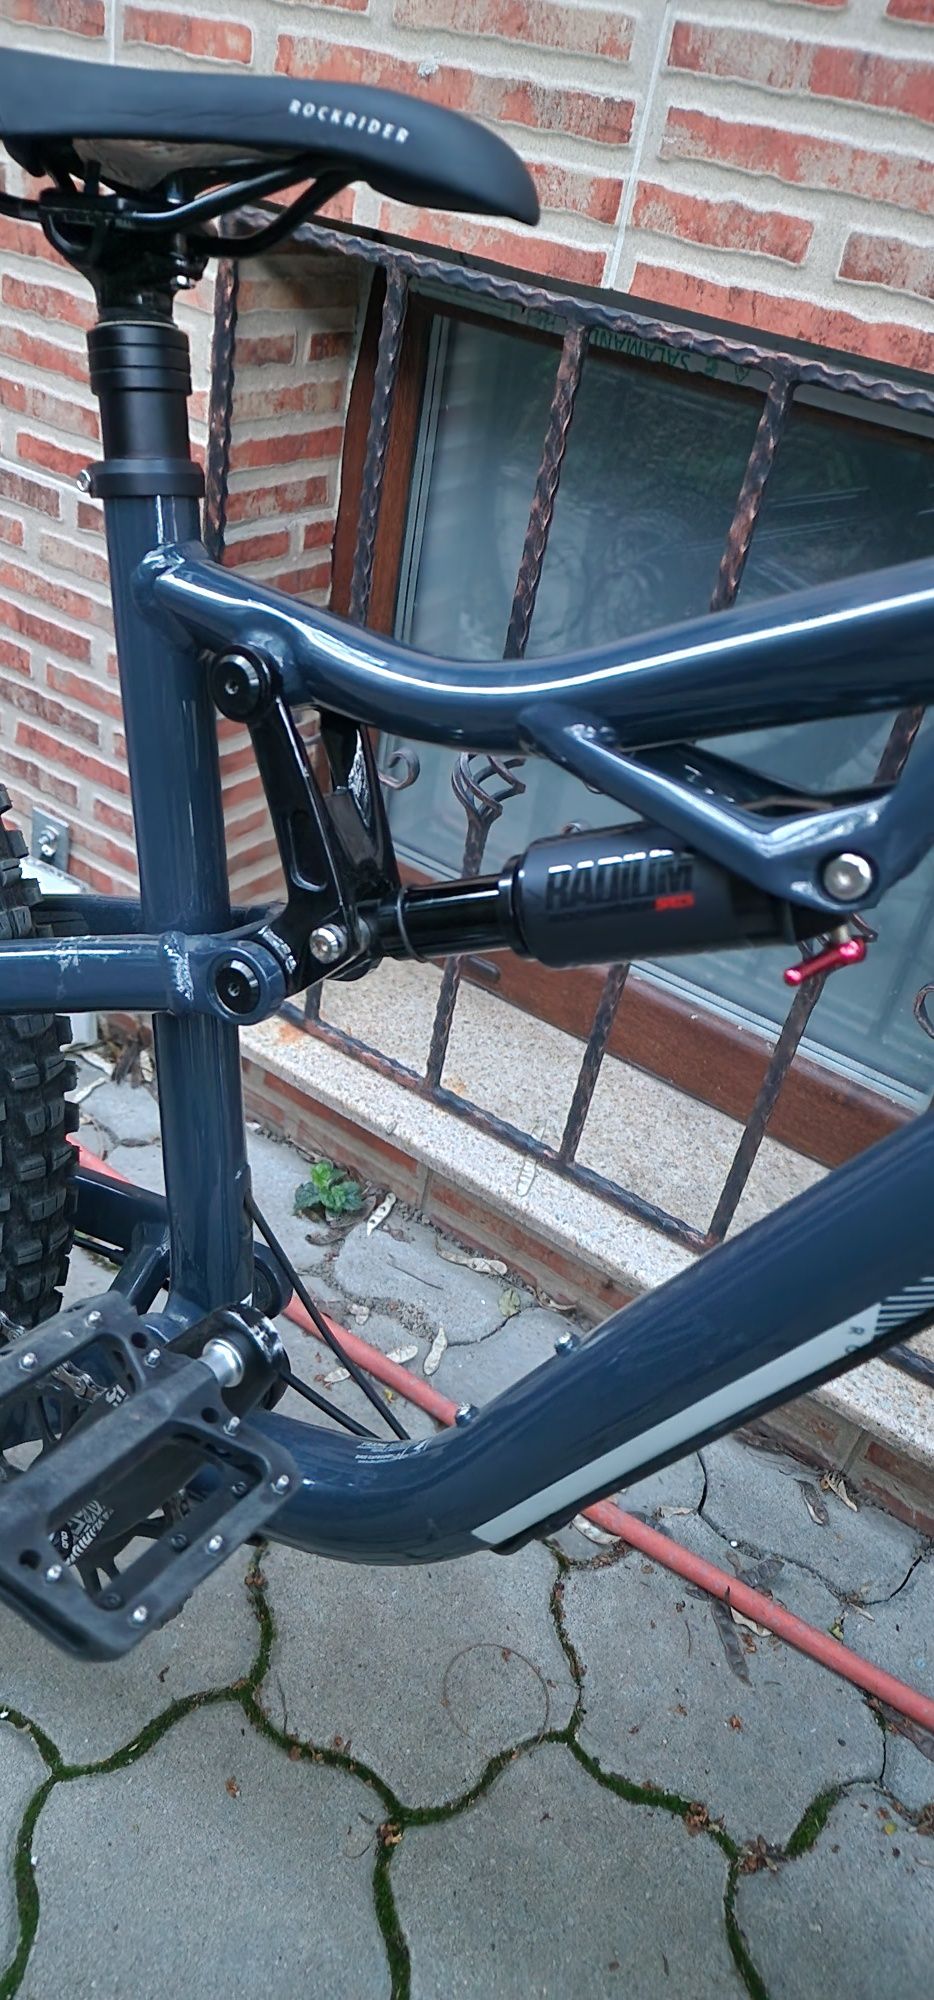 Bicicleta AM 50S Full suspension